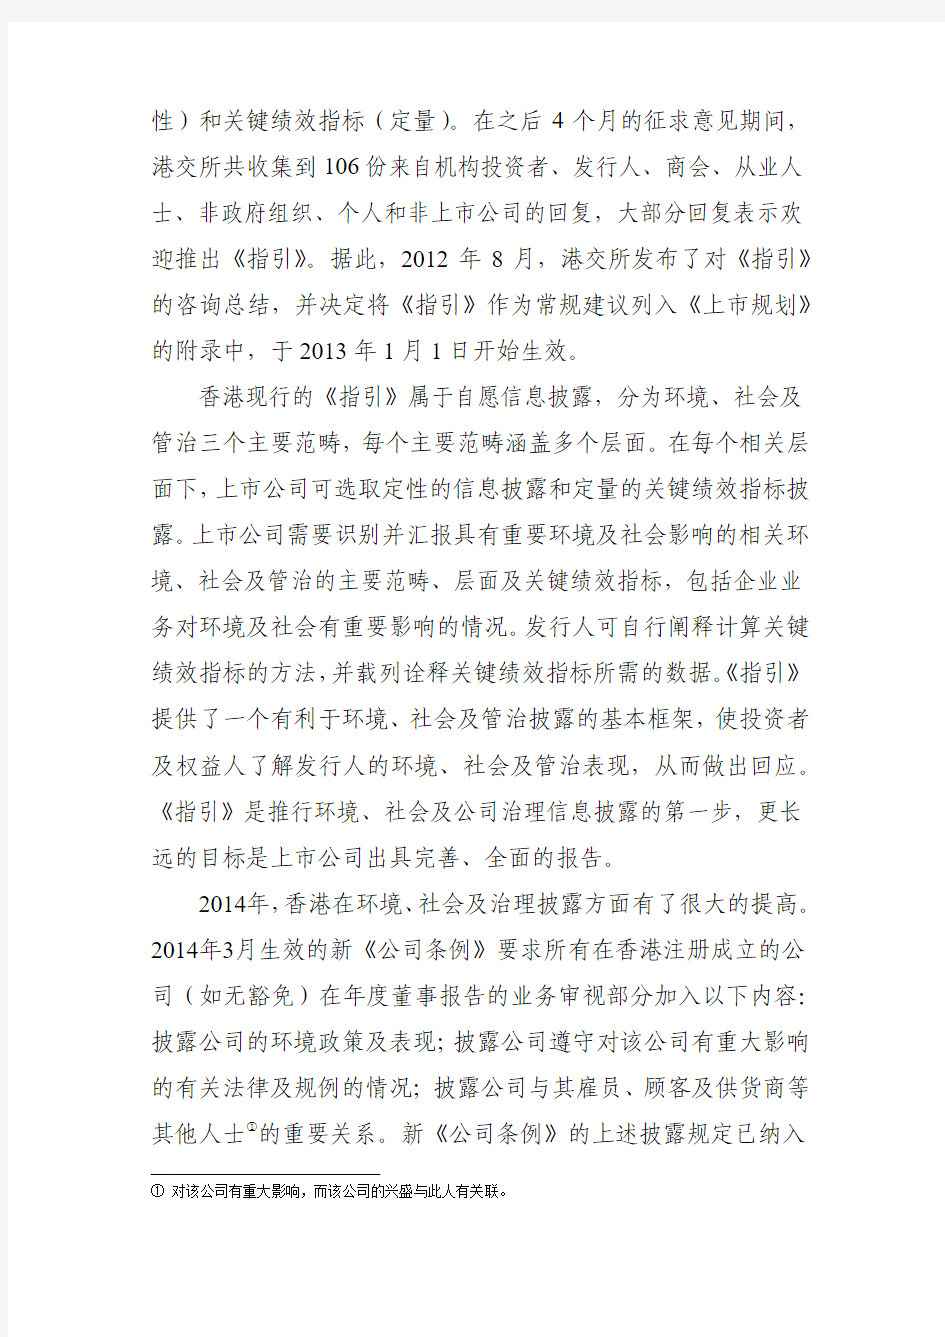 中国证券监督管理委员会-香港交易所上市公司环境、社会及公司治理信息披露制度及启示